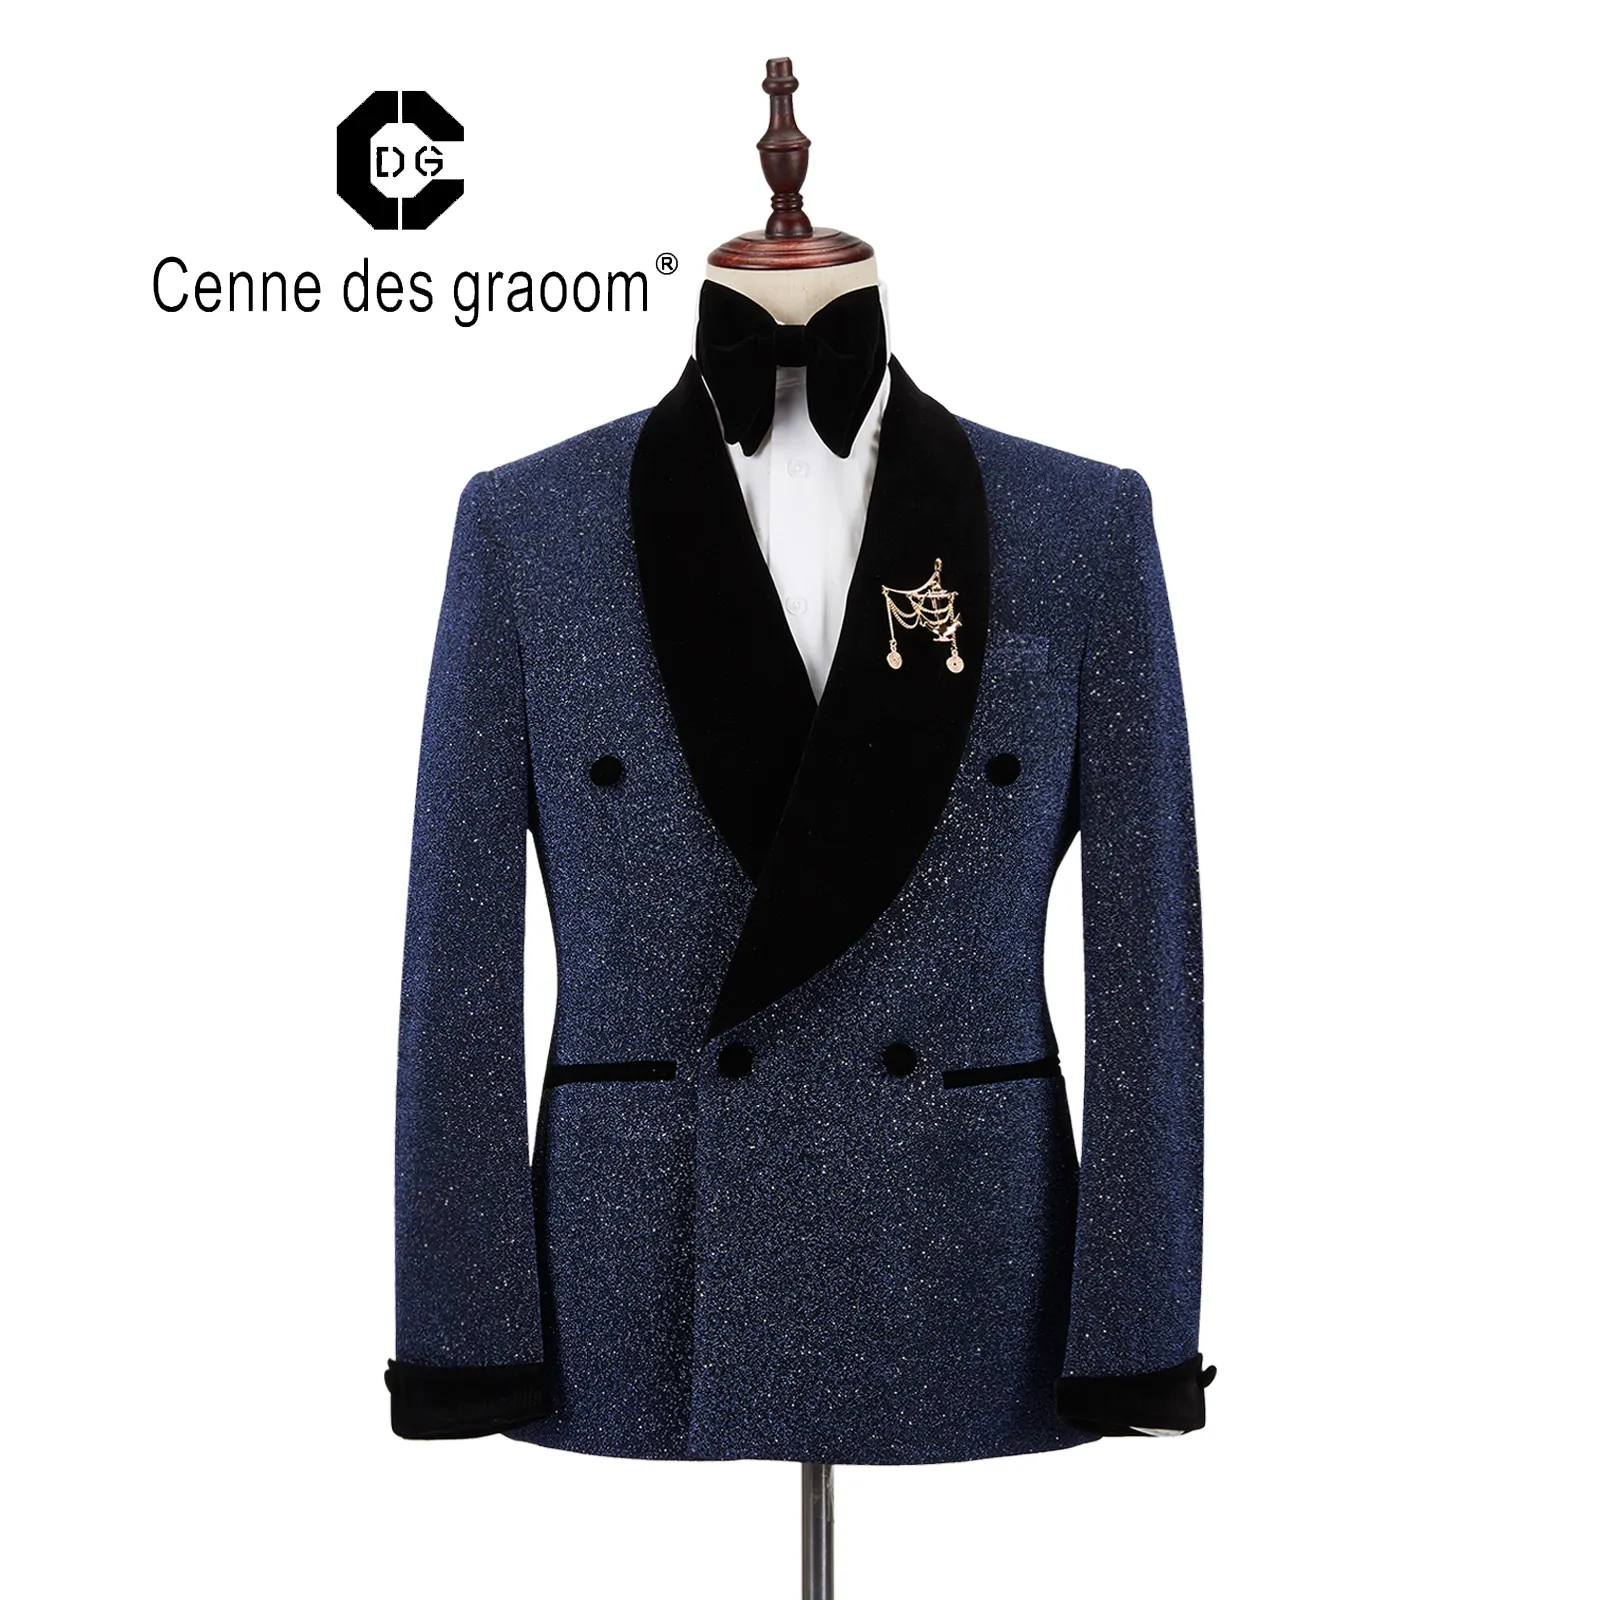 Top qualité homme costume formel manteau cintrée homme bleu mariage costume ensemble étiquette cenne des graoom veste avec pantalon